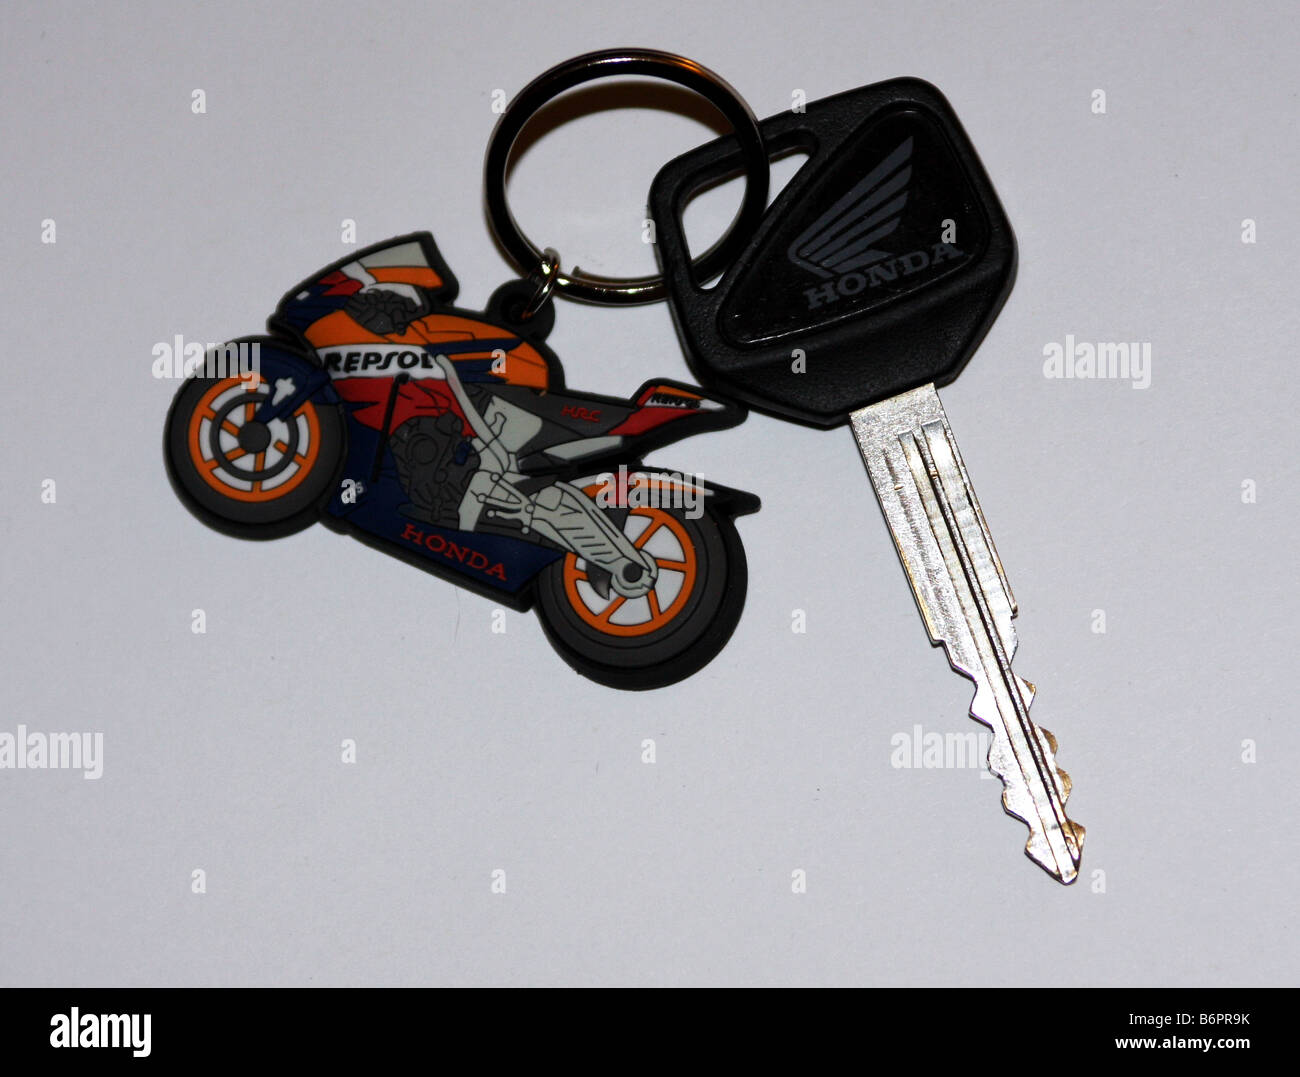 MotoGP-Honda Repsol Motorrad befestigt Schlüsselanhänger ein Honda-Zündschlüssel  Stockfotografie - Alamy